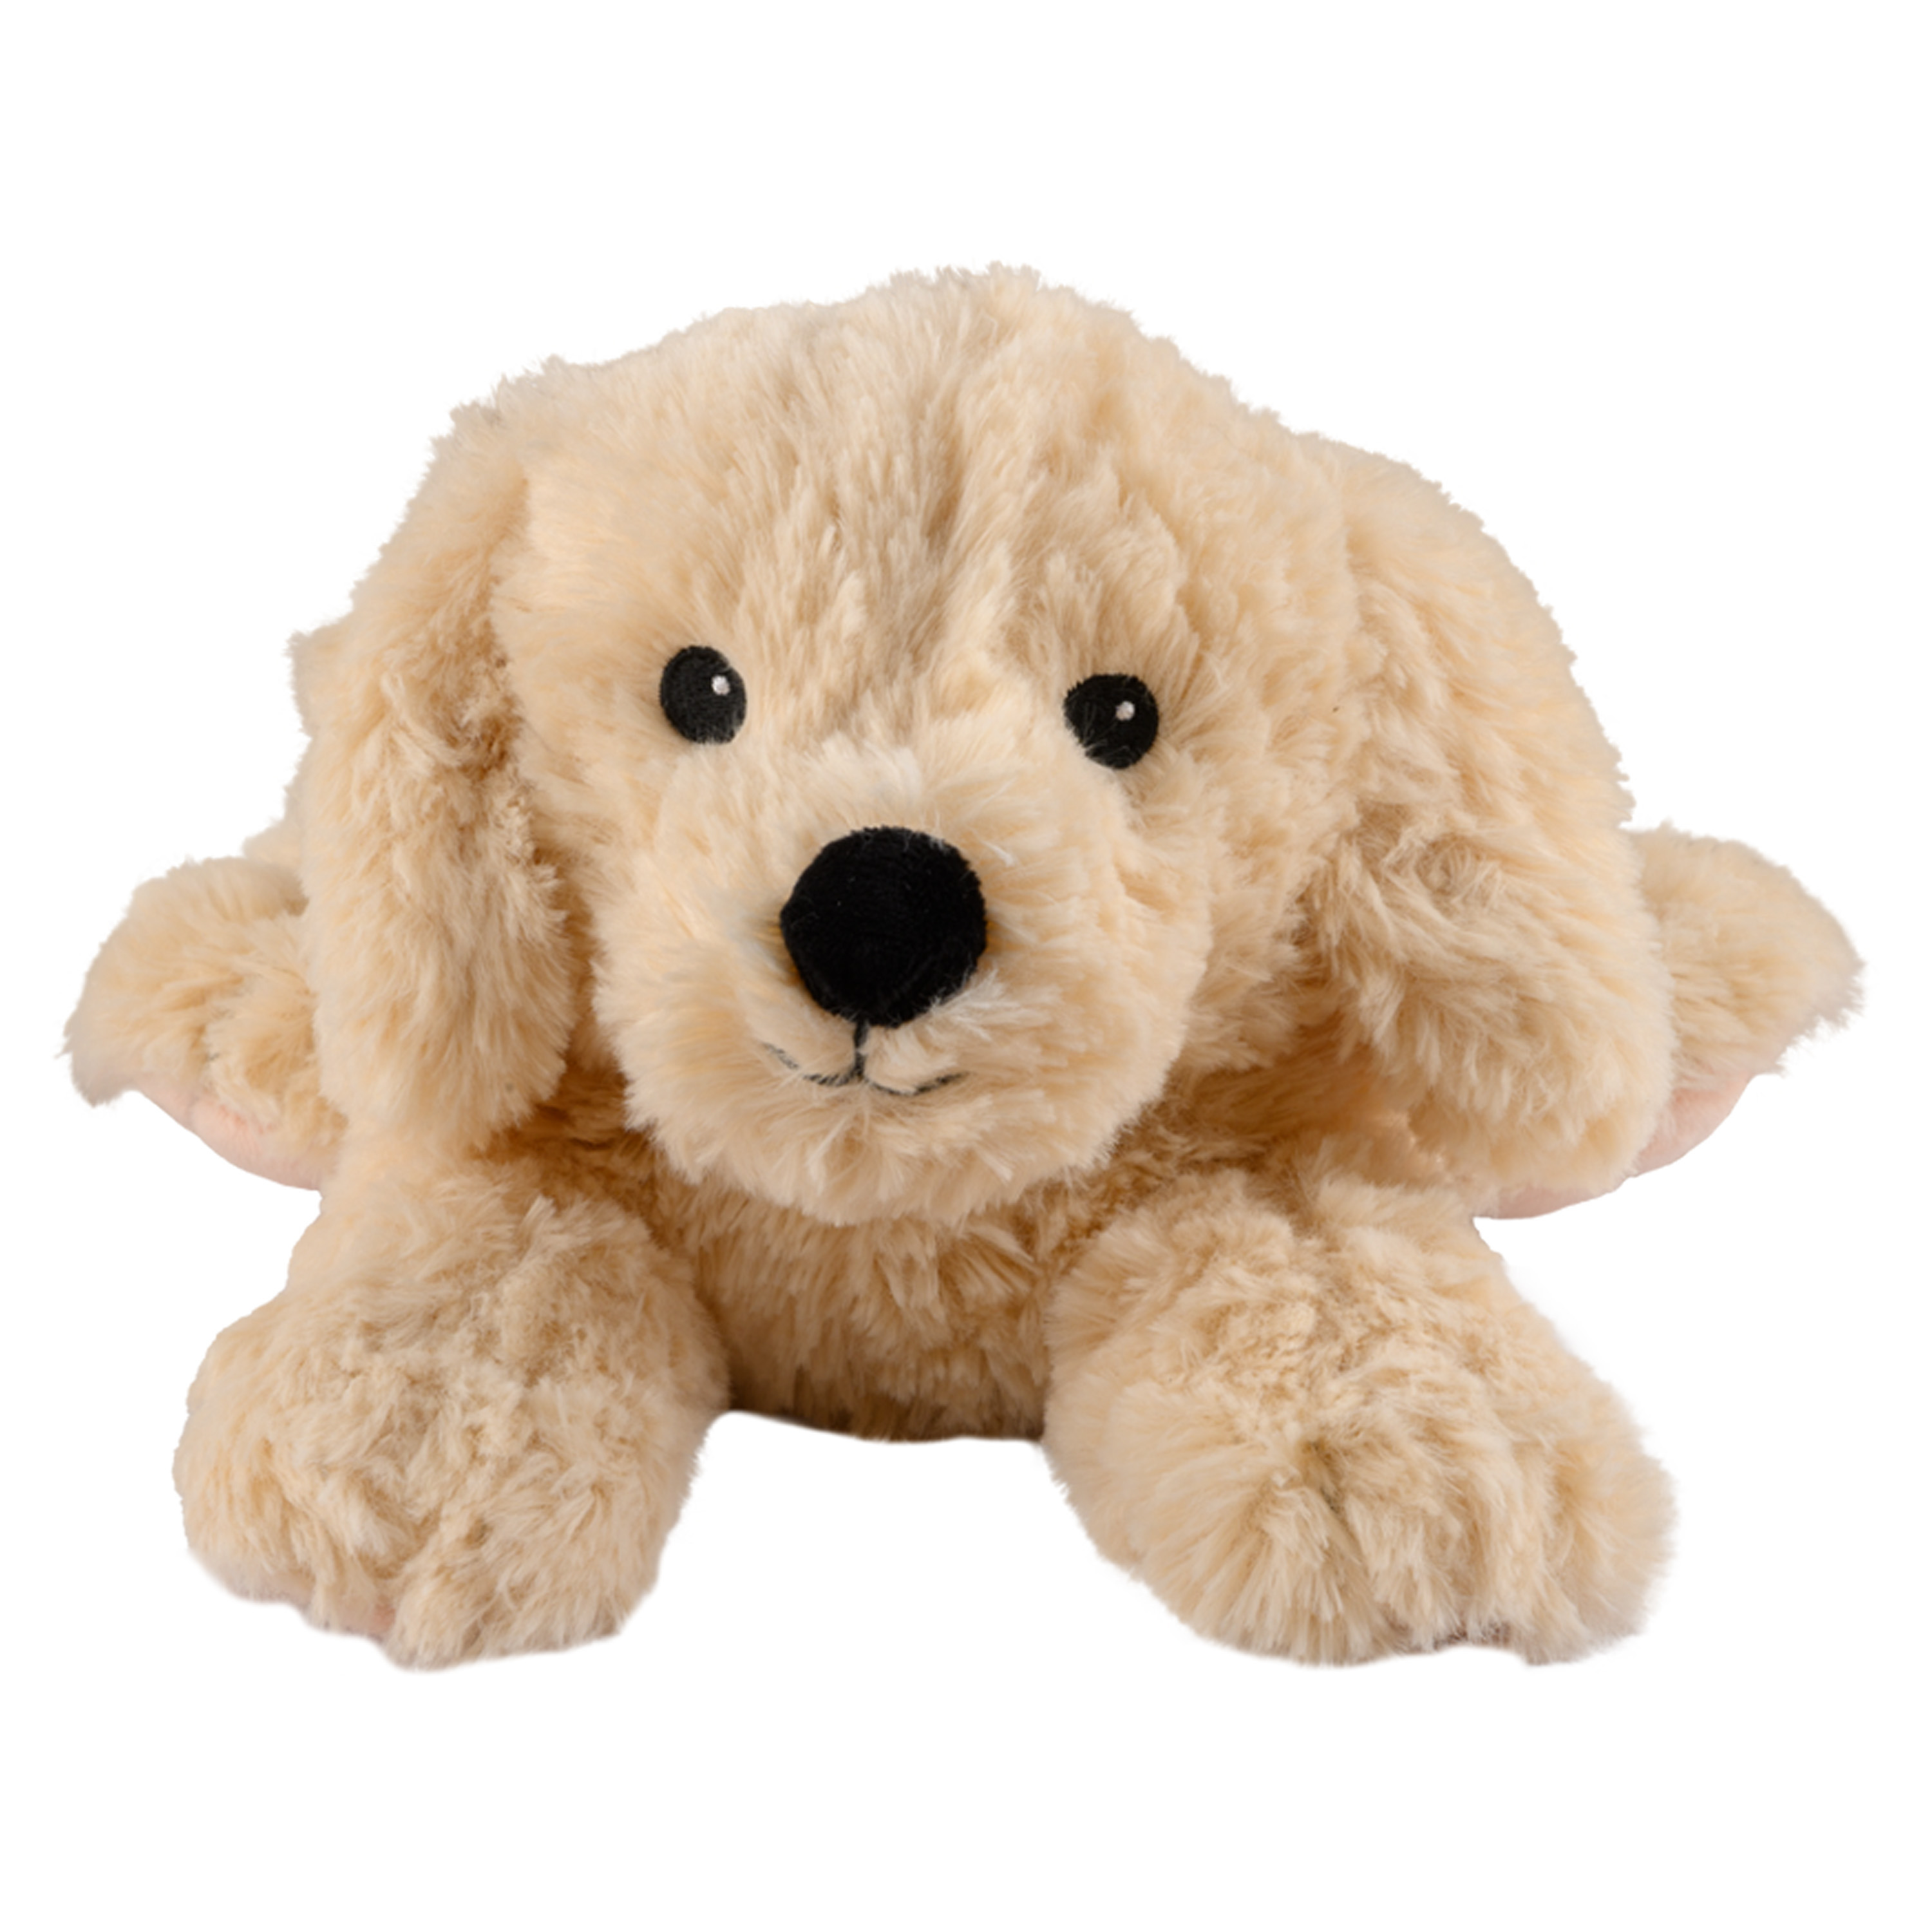 Warmies Warmte-magnetron opwarm knuffel Hond-golden retriever bruin 33 cm pittenzak